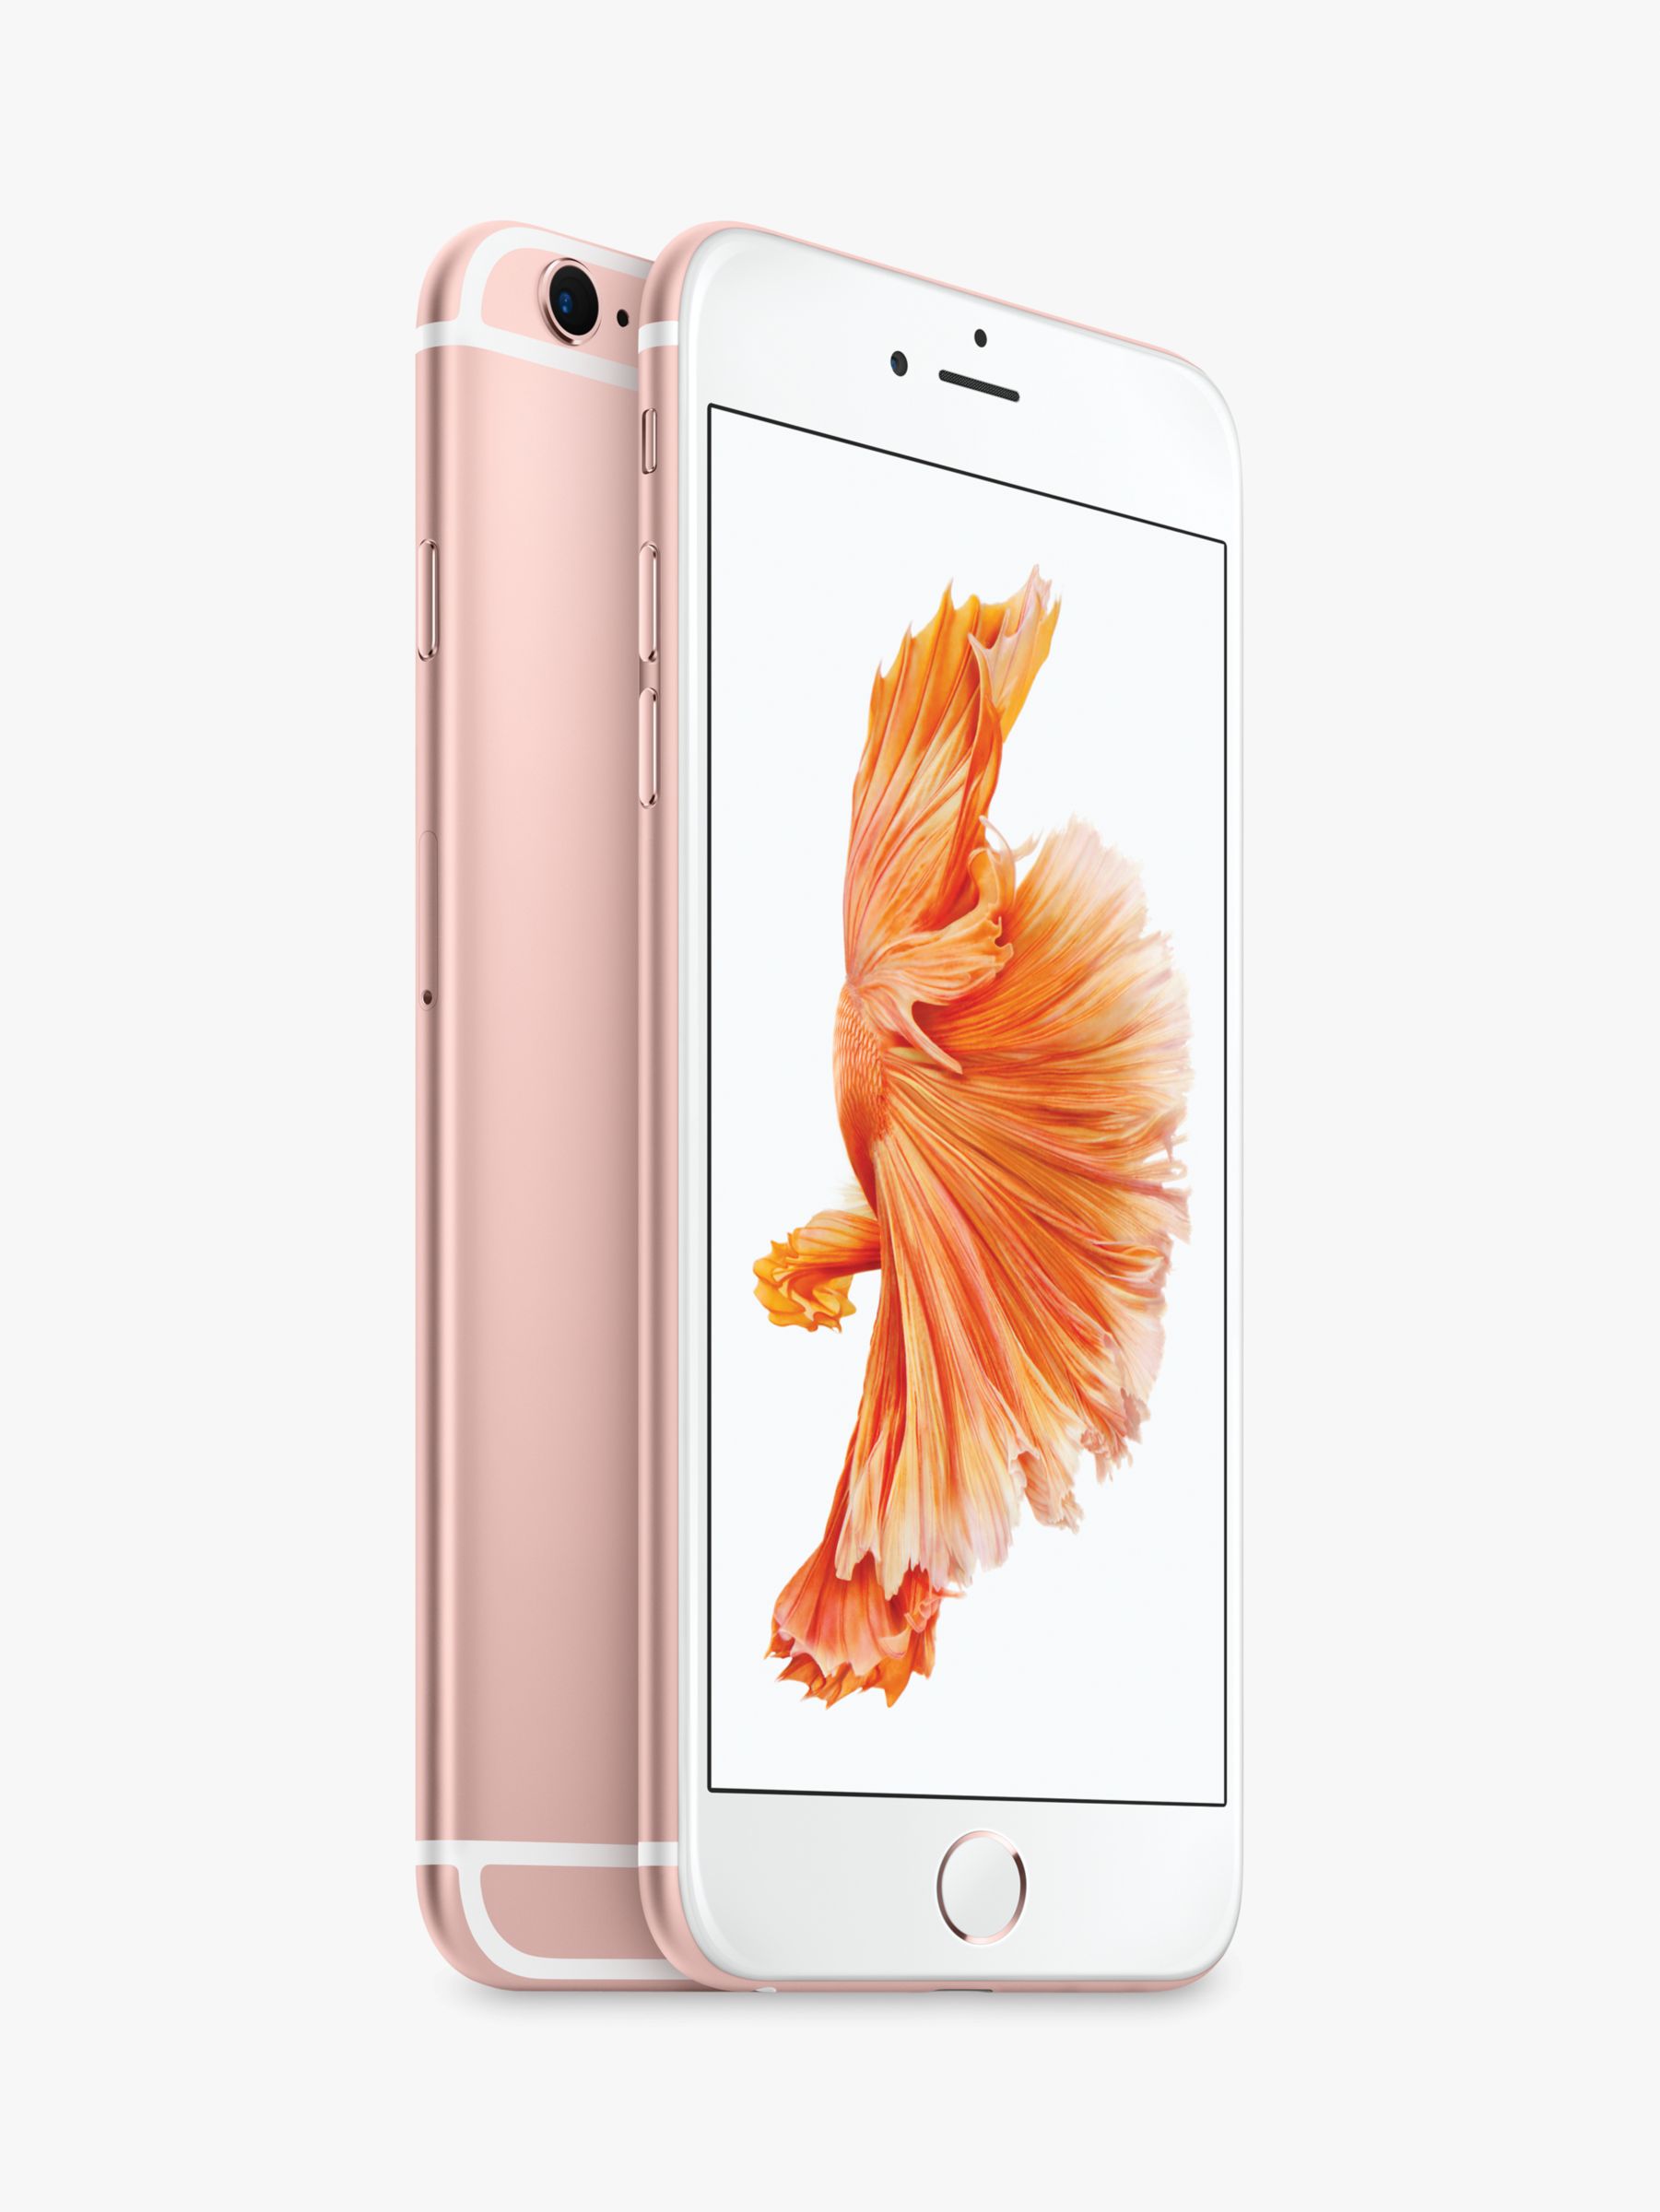 Apple iPhone 6s Plus, iOS, 5.5, 4G LTE, SIM Free, 32GB